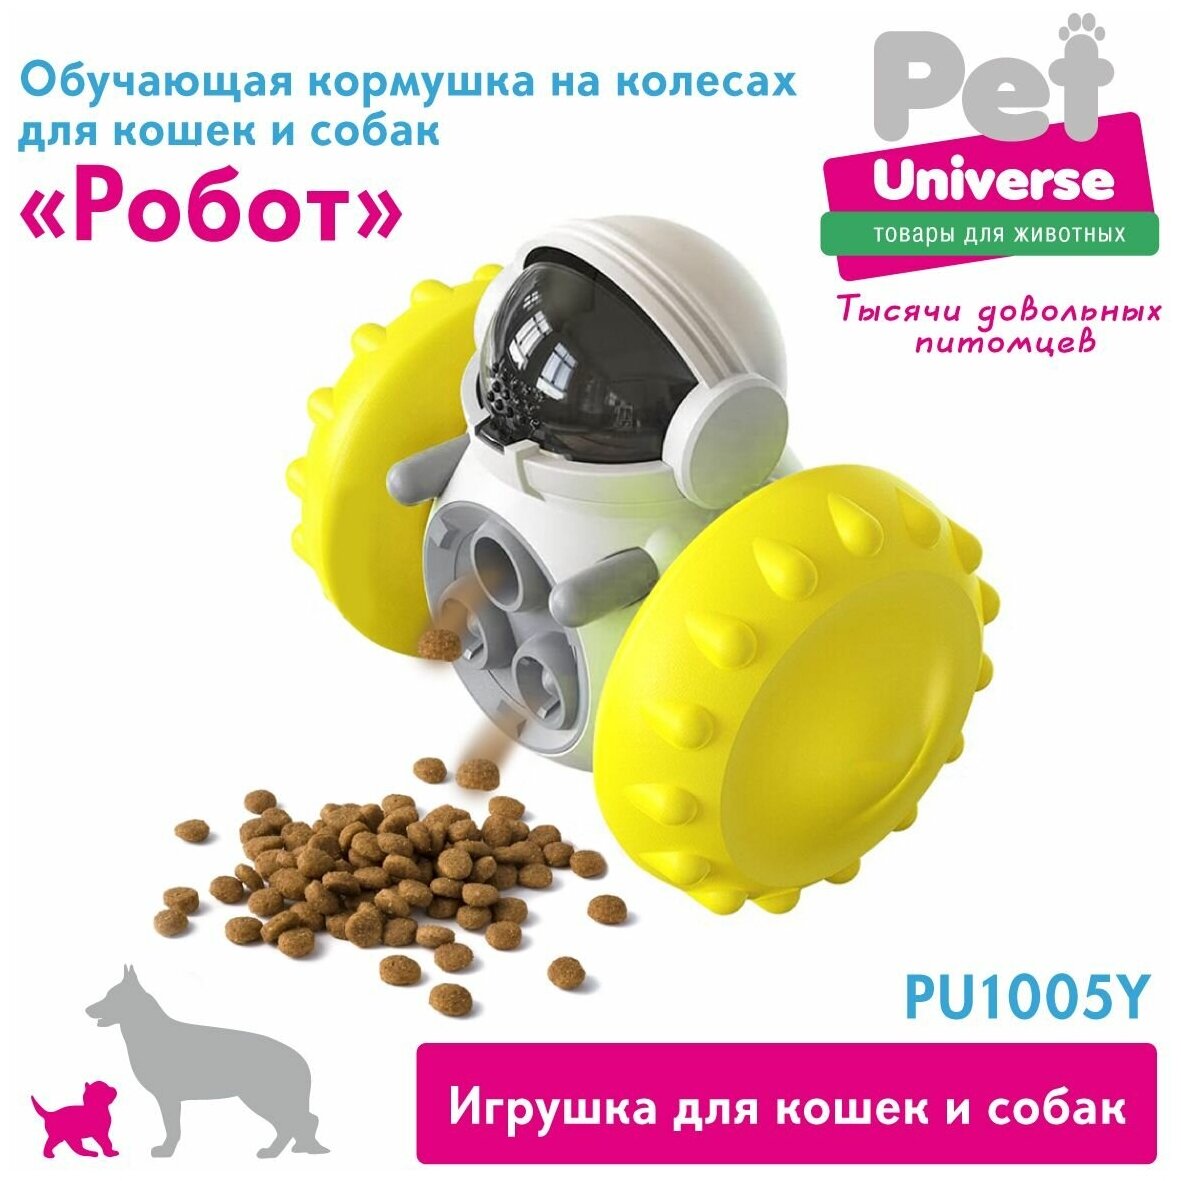 Развивающая игрушка игрушка для собак и кошек Робот на колесах Pet Universe. Головоломка дозатор для медленной еды и лакомств